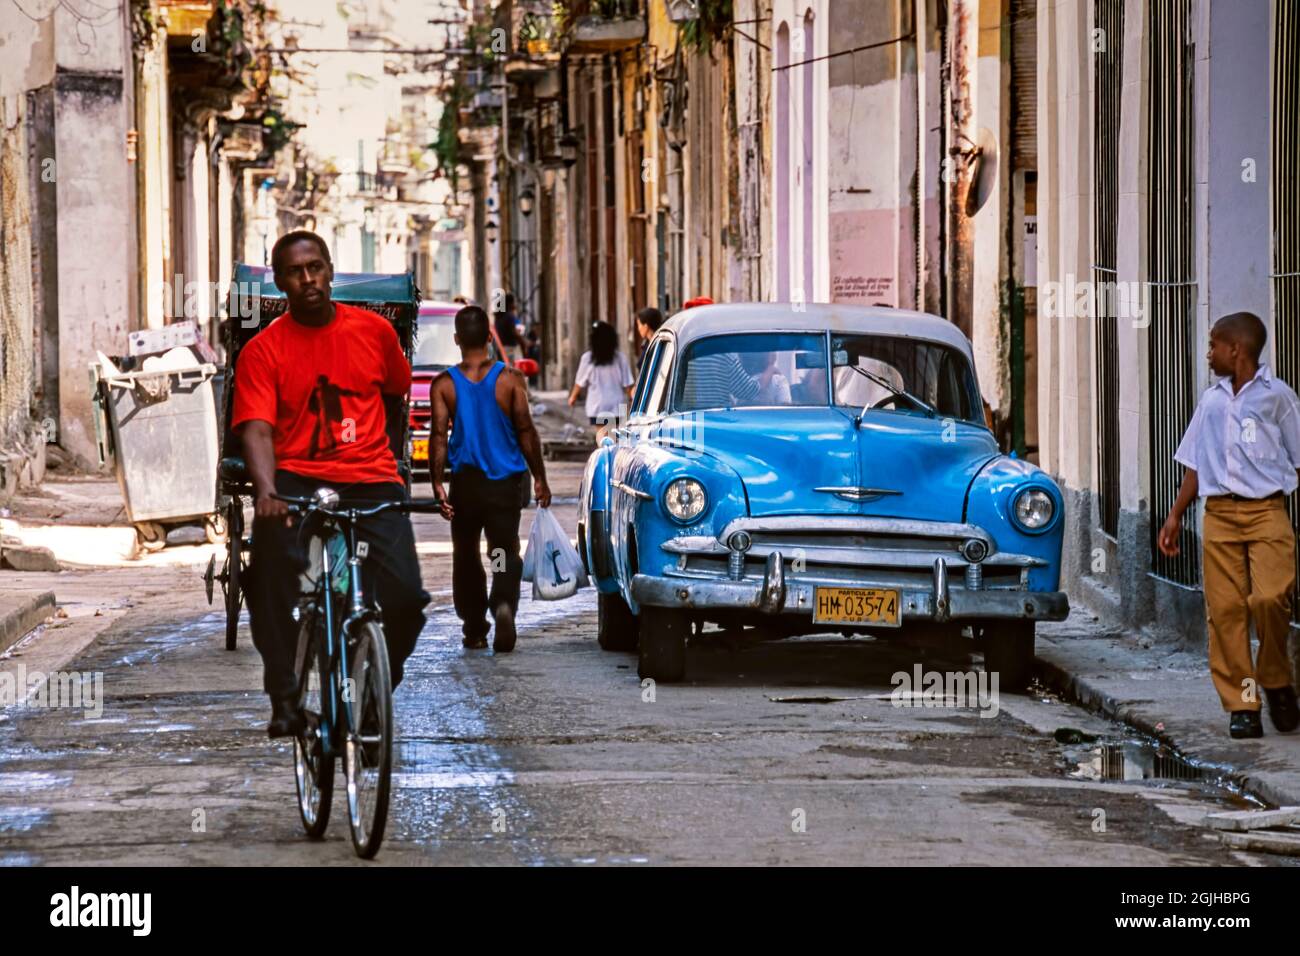 El coche clásico americano de la era de los años cincuenta, los peatones y el bicilo en la calle, La Habana, Cuba Foto de stock